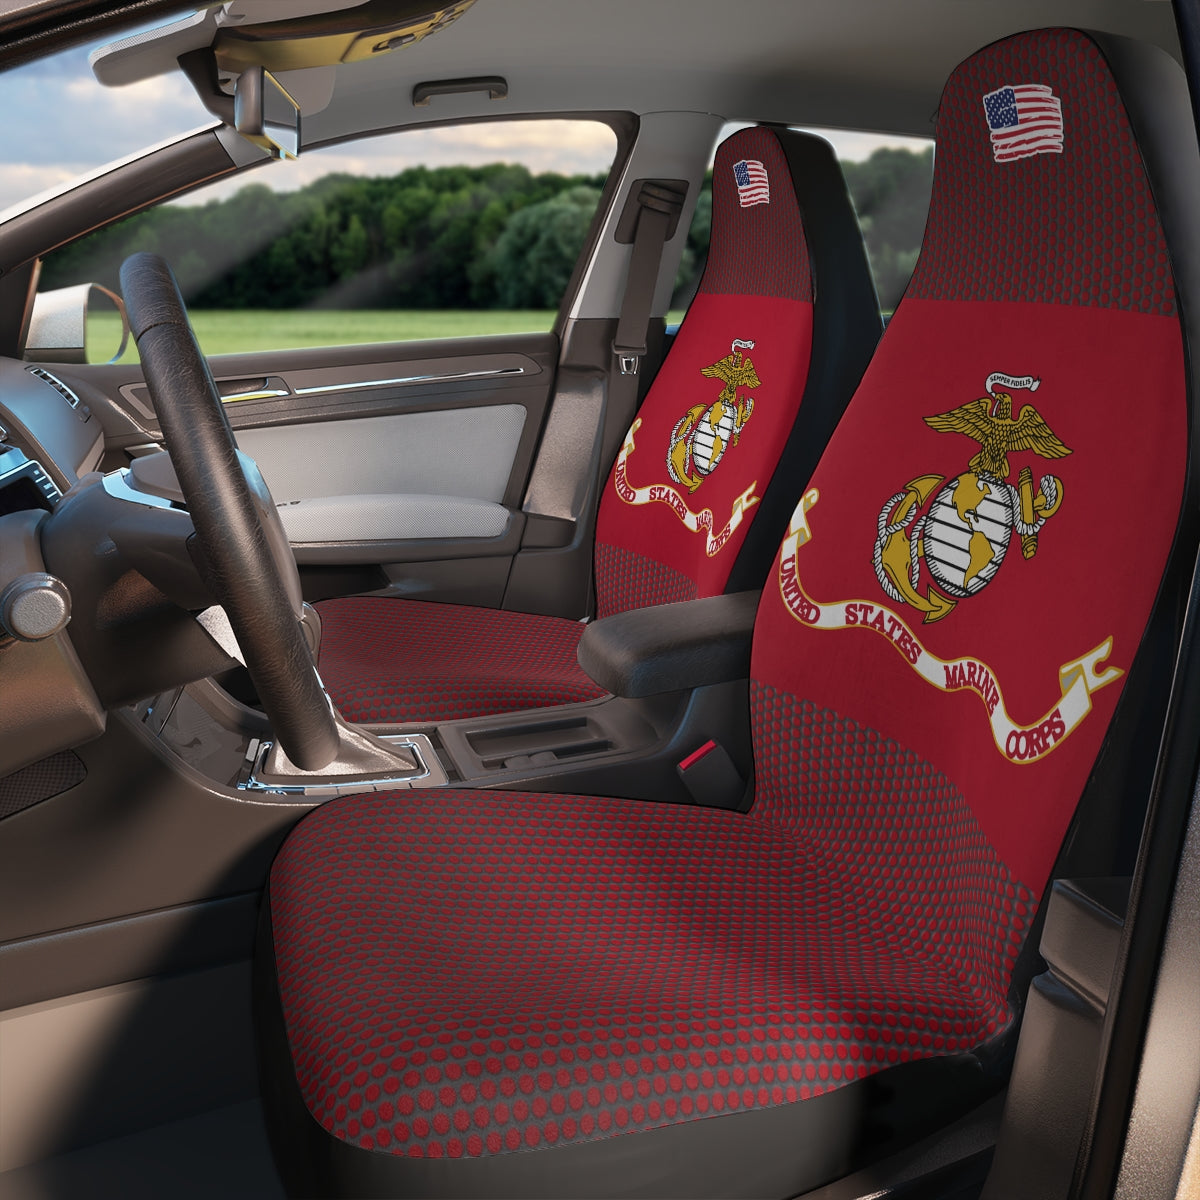 Fundas de asiento de coche de poliéster rojo oscuro del Cuerpo de Marines de EE. UU.